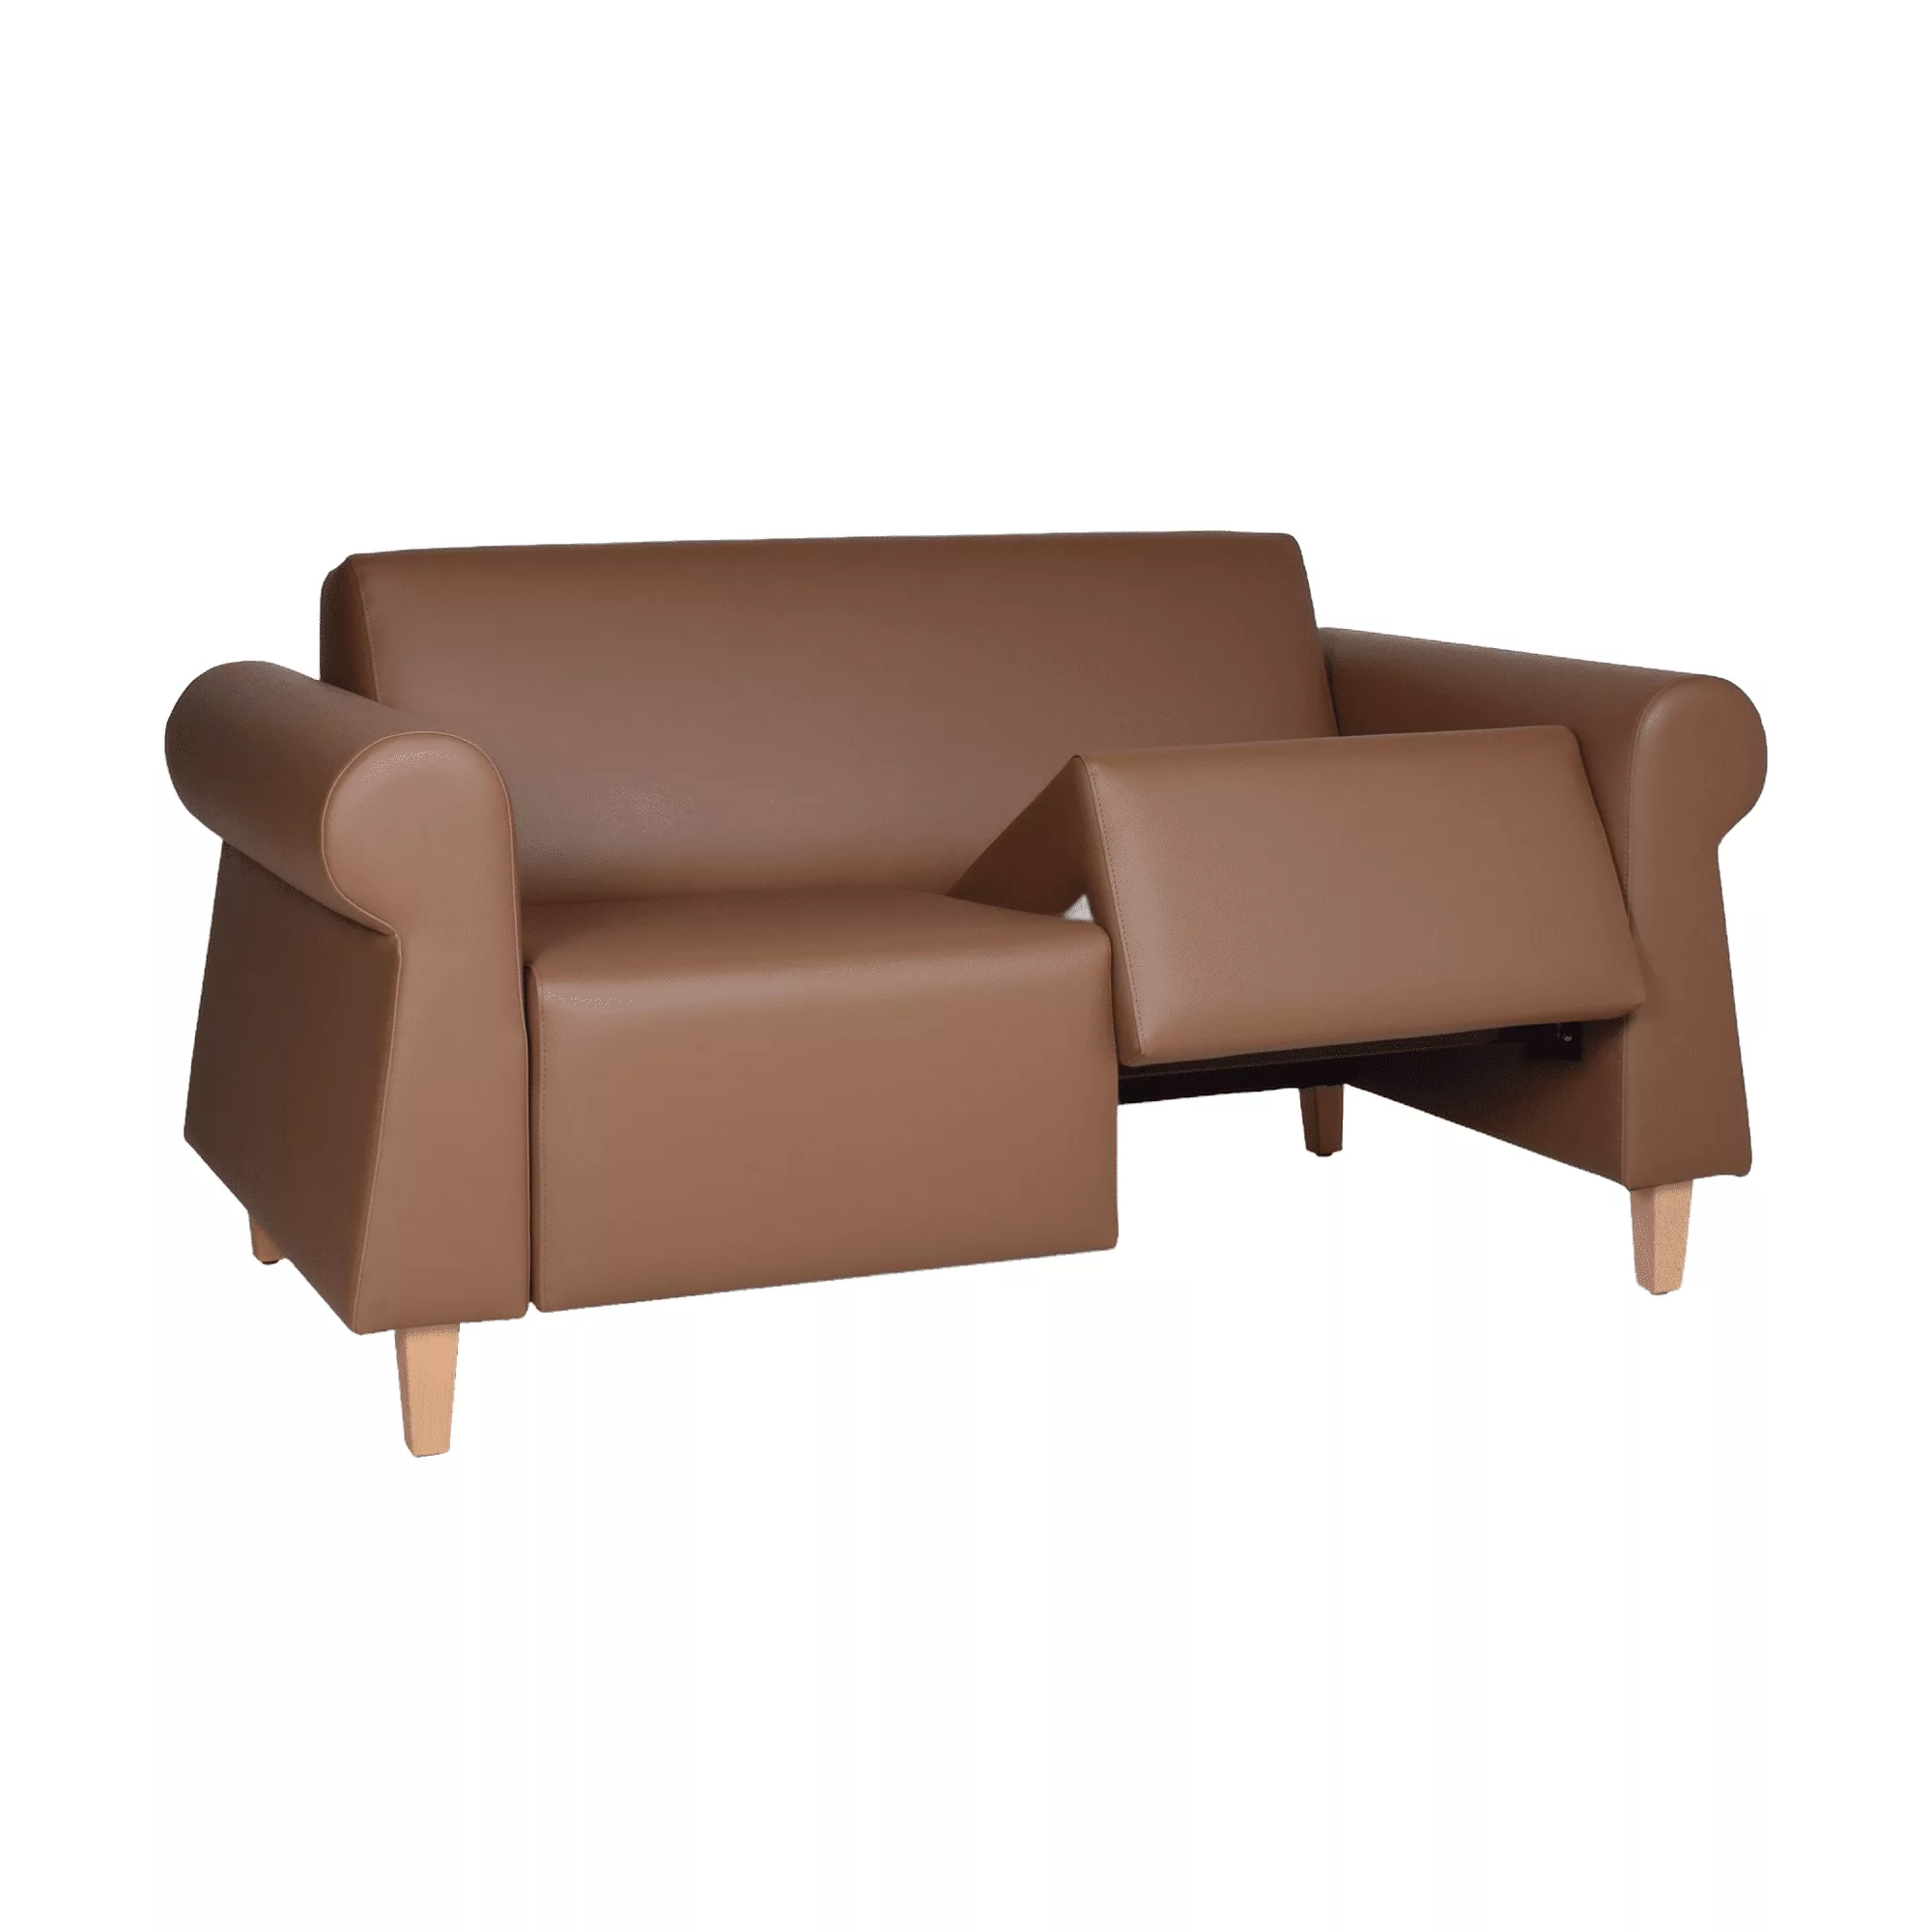 Bruine zitbank met ronde armleuningen en uitneembare zitting op houten meubelpoten.